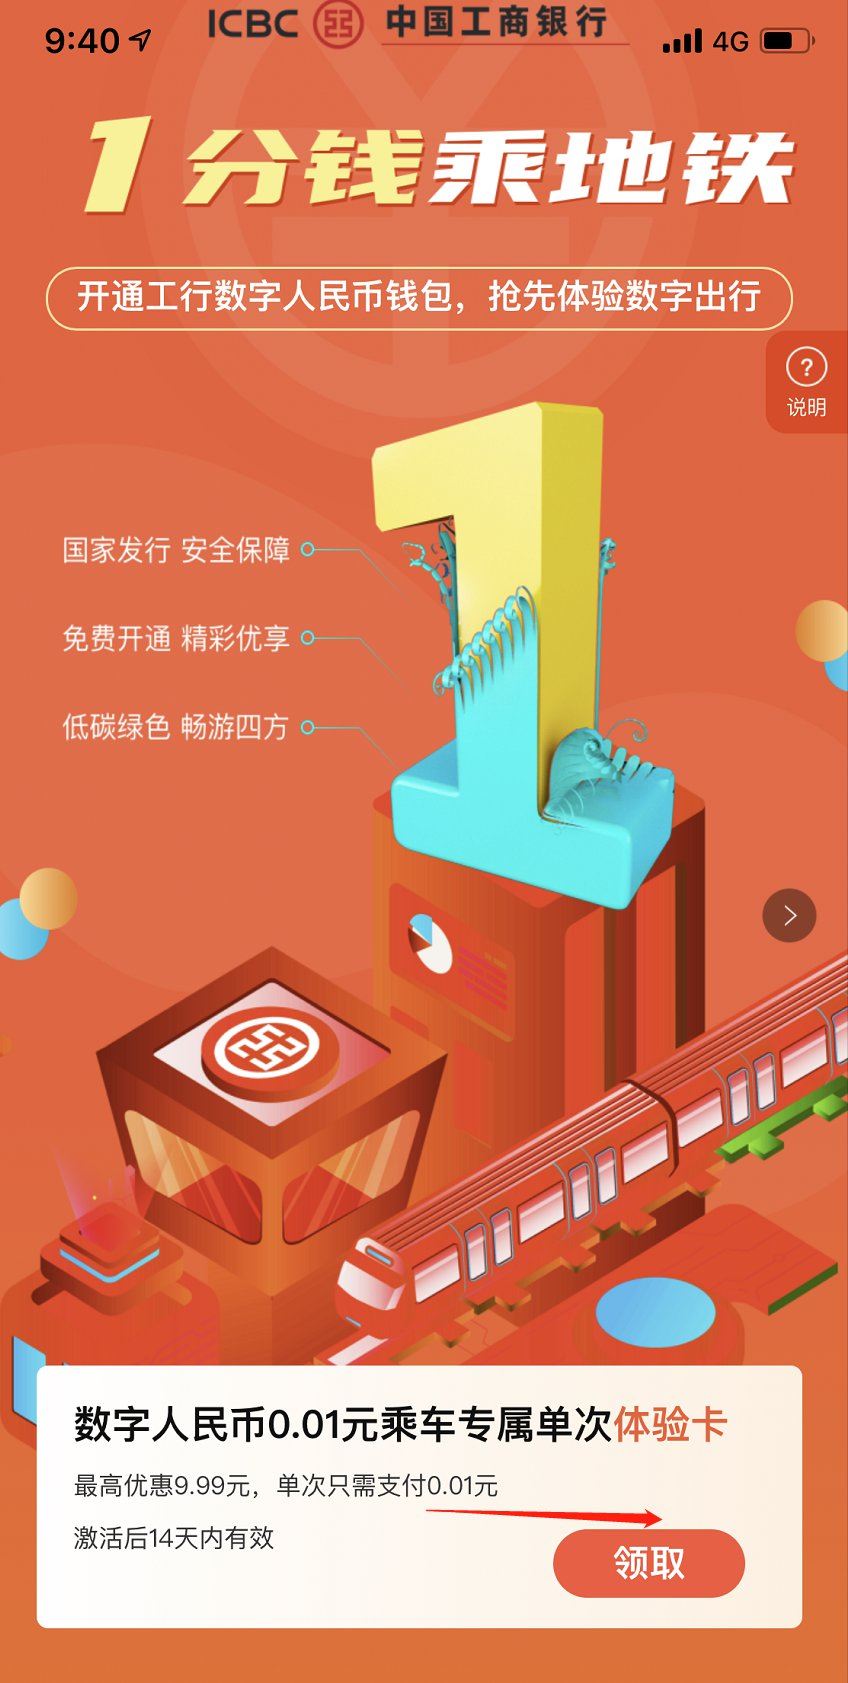 北京数字人民币工行1分钱乘坐地铁优惠领取入口